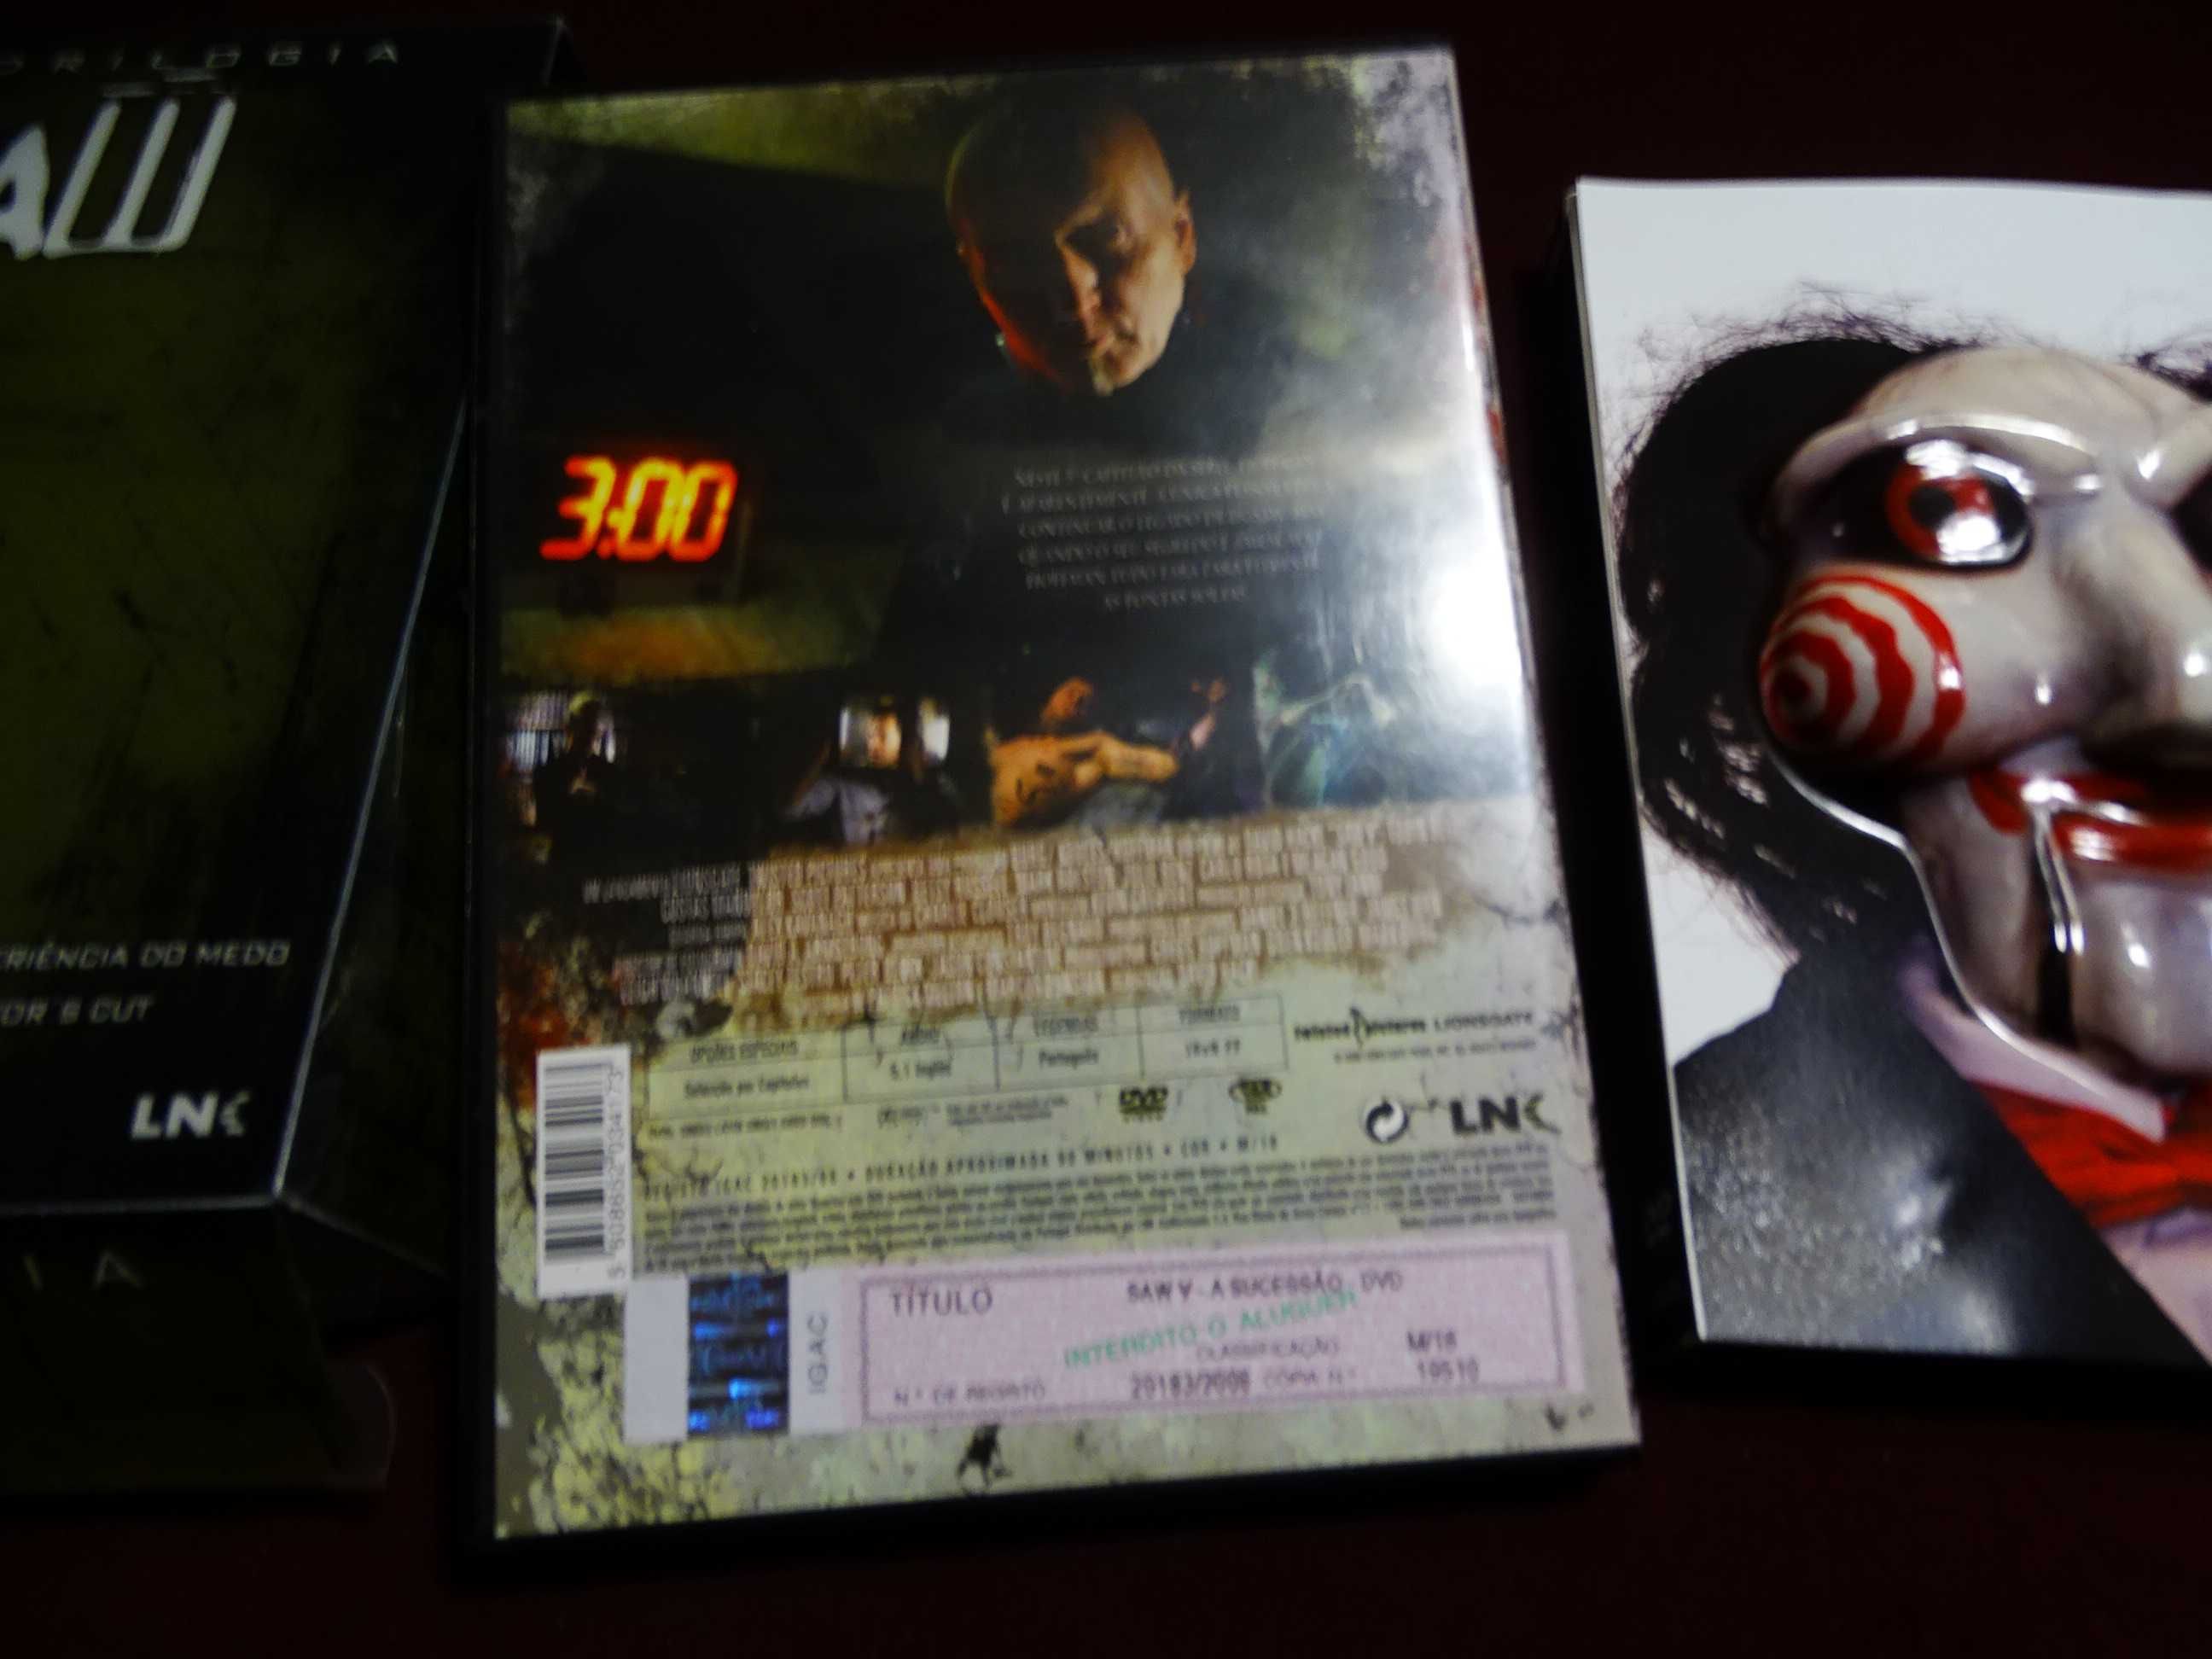 DVD pack-Saw quadrilogia+Saw V